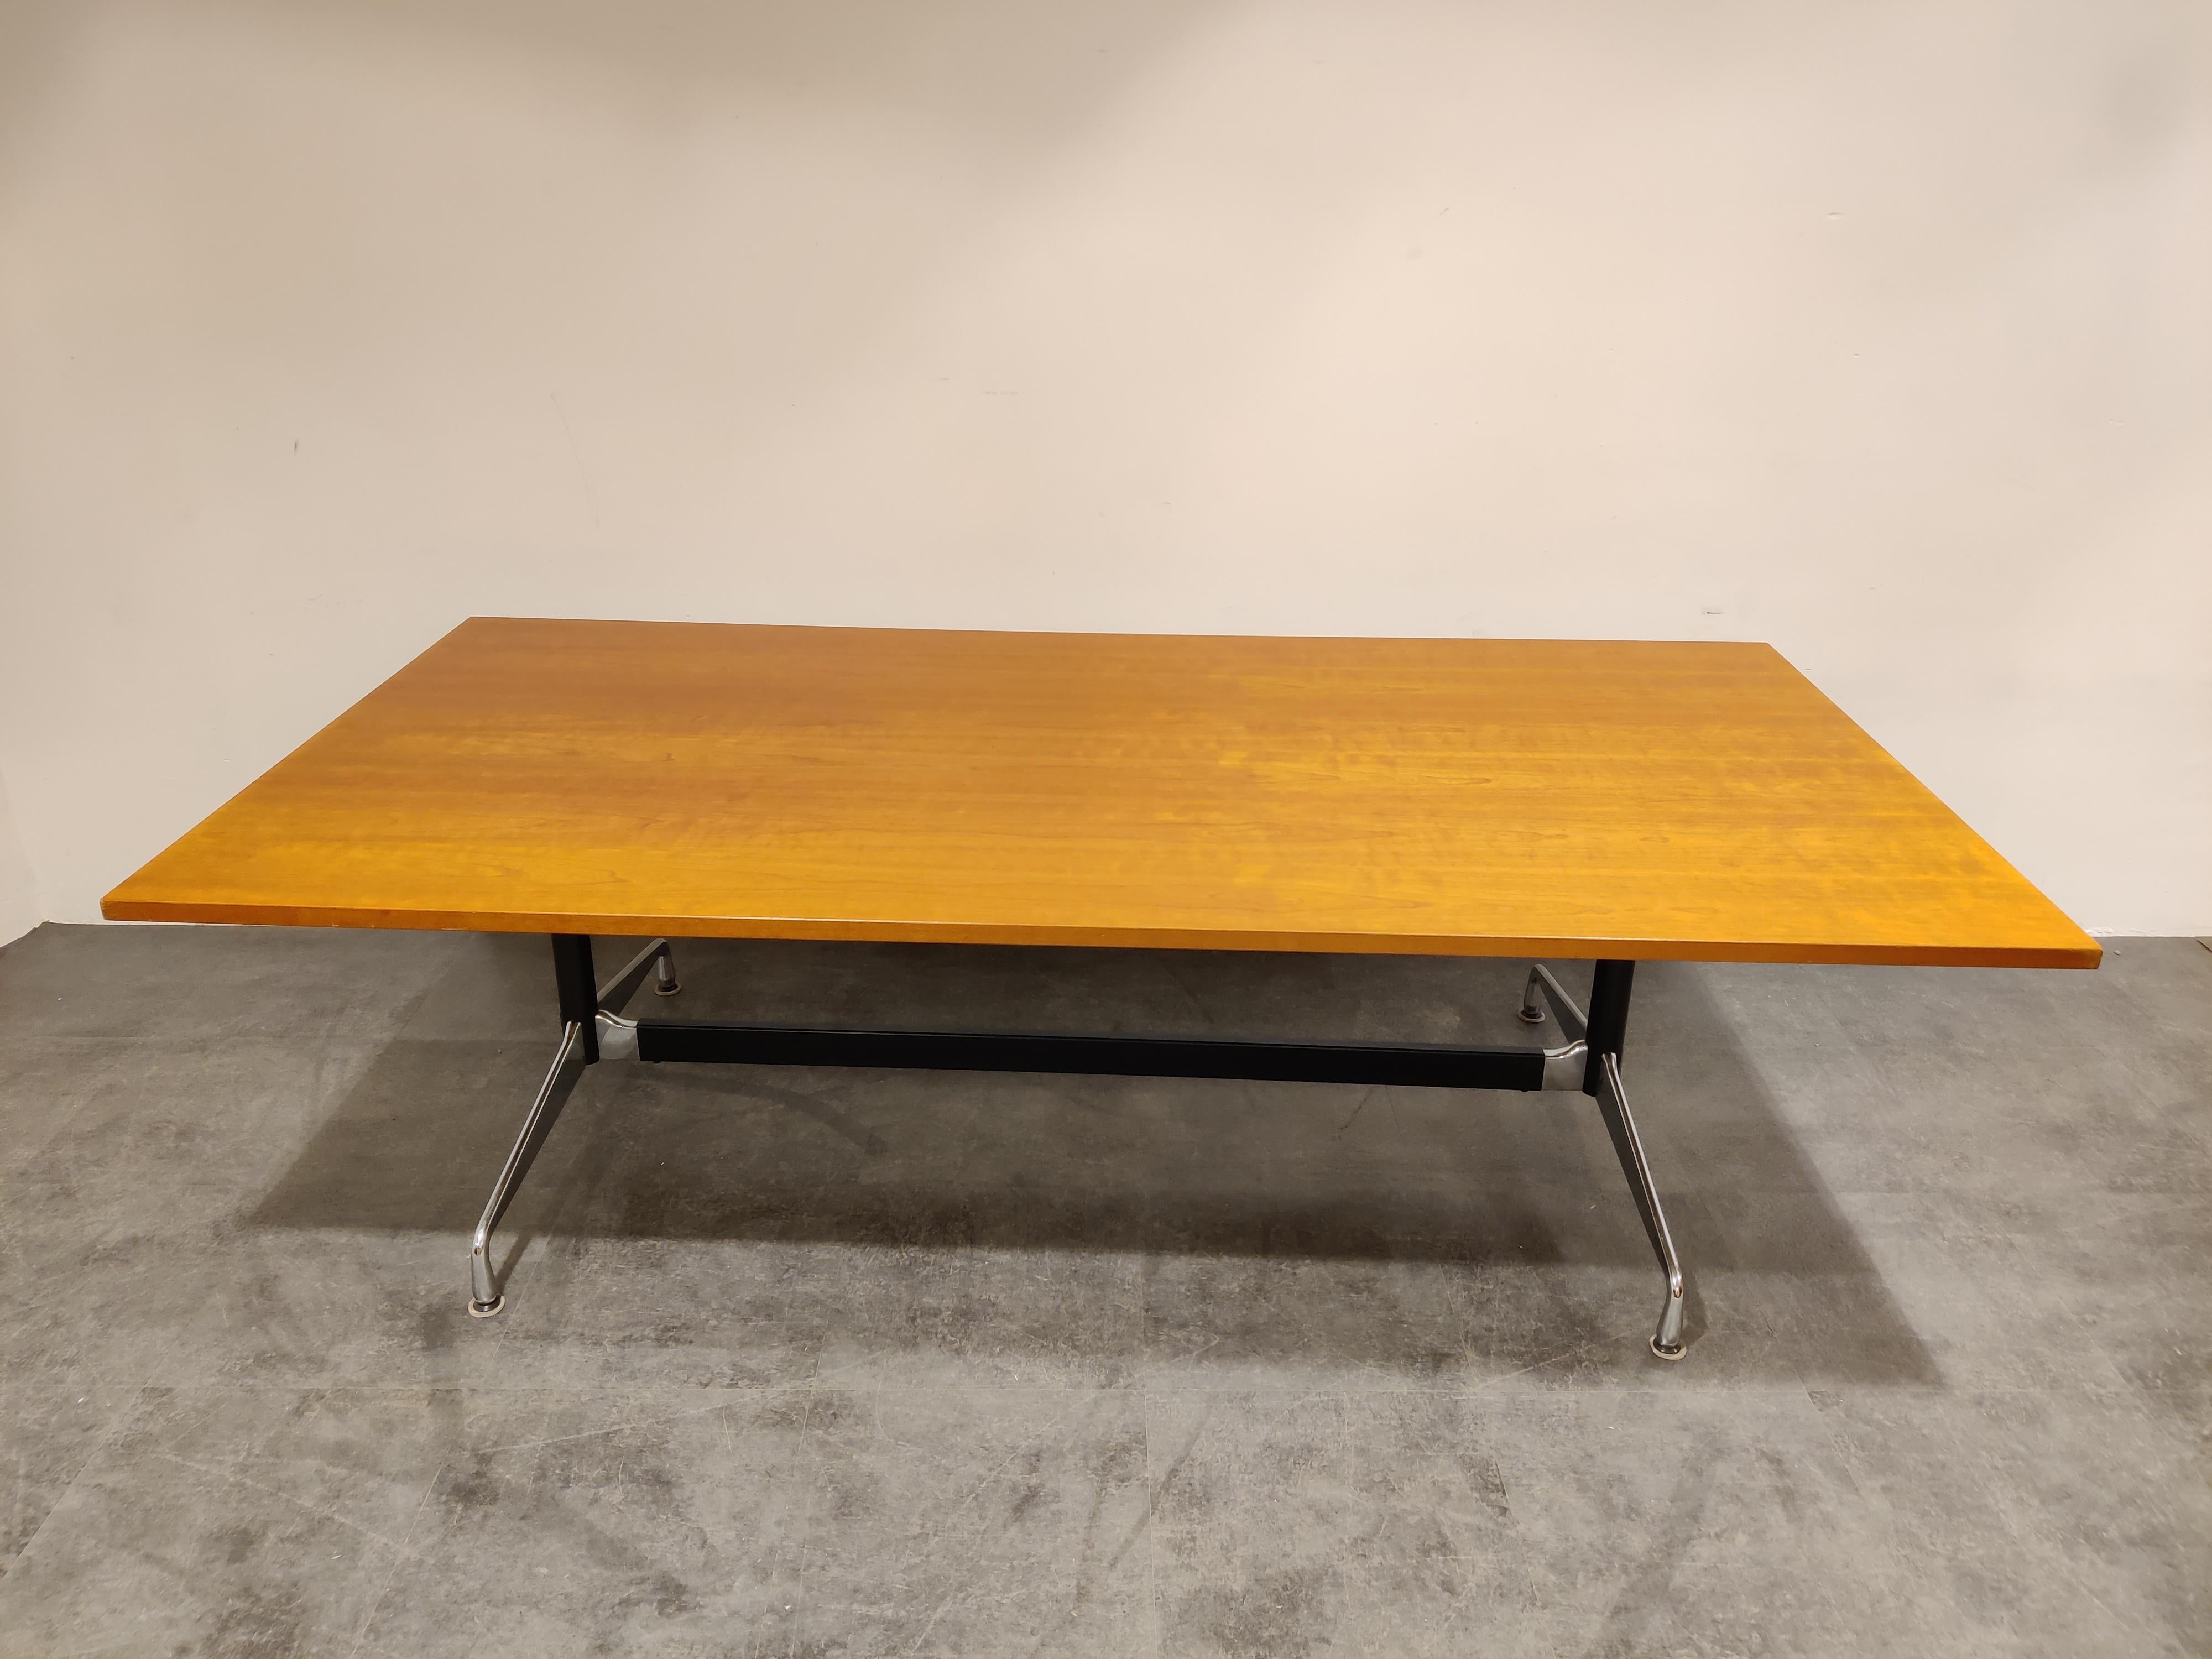 Grande table de salle à manger vintage, table de conférence par Charles et Ray Eames pour Herman Miller.

Beau et solide plateau en bois avec une base en aluminium chromé.

La table est en bon état d'origine, petits dommages aux coins.

Une pièce de